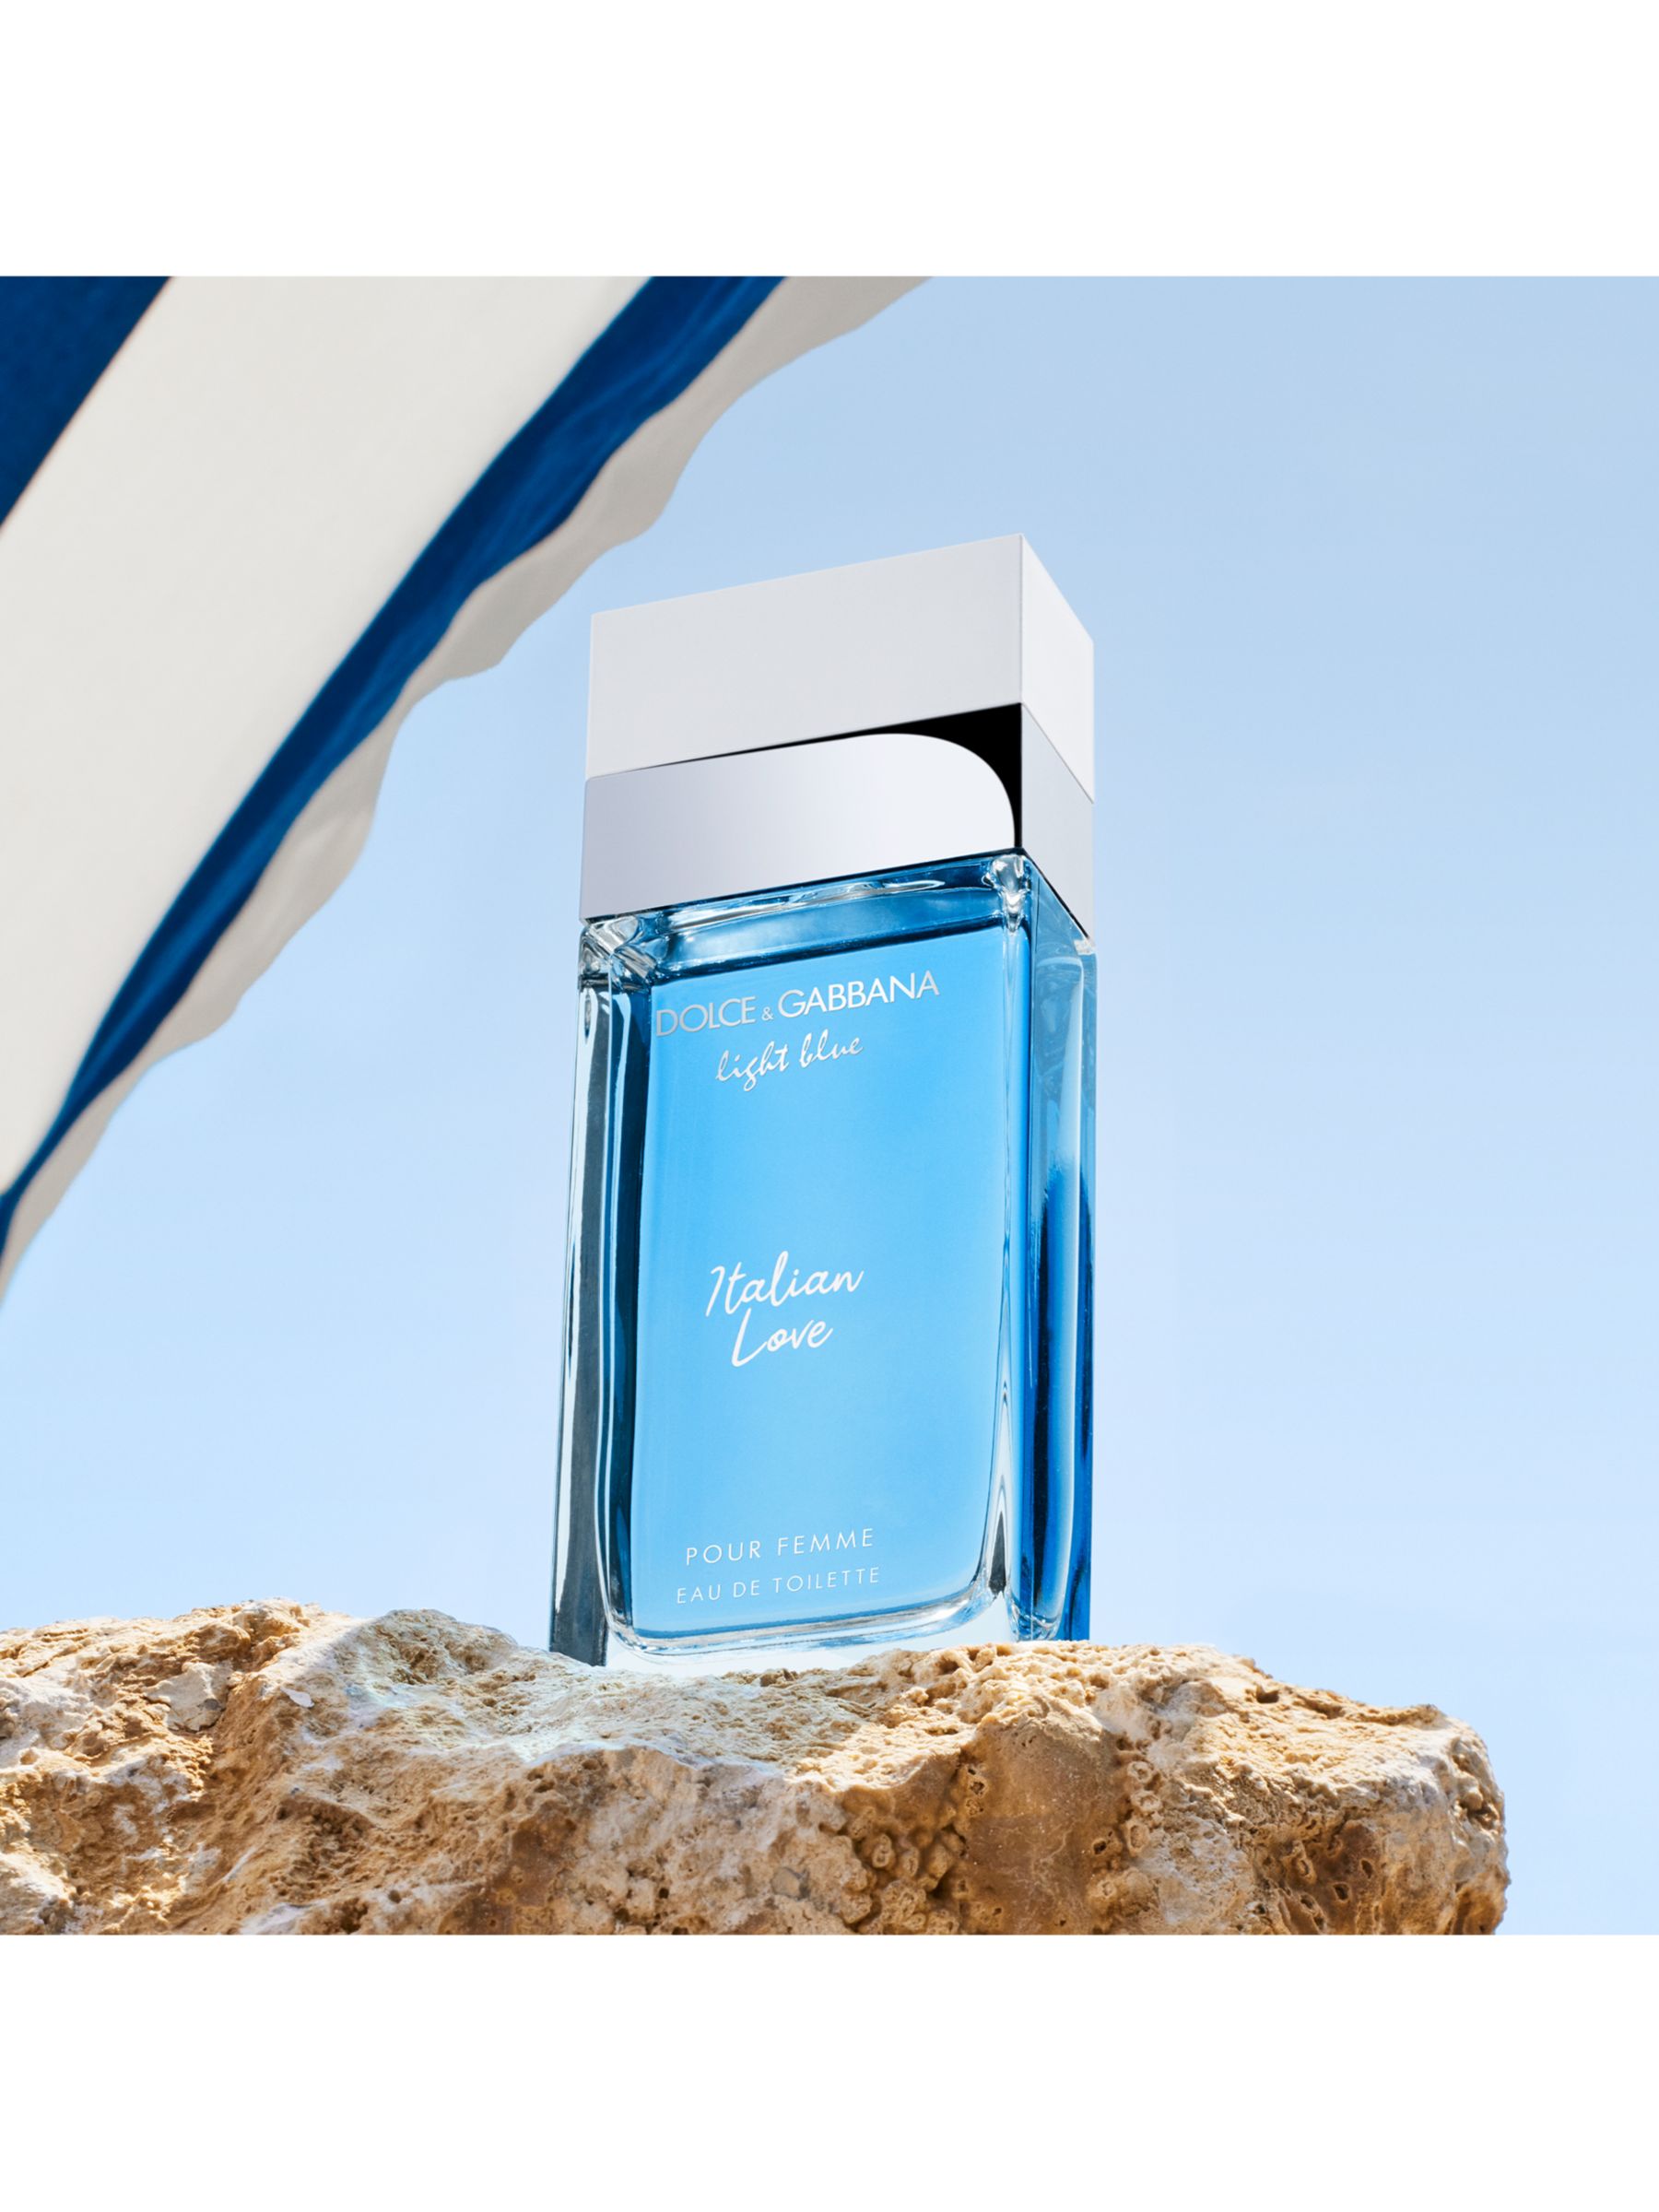 Dolce & Gabbana Light Blue Italian Love Pour Femme Eau de Toilette, 25ml 4